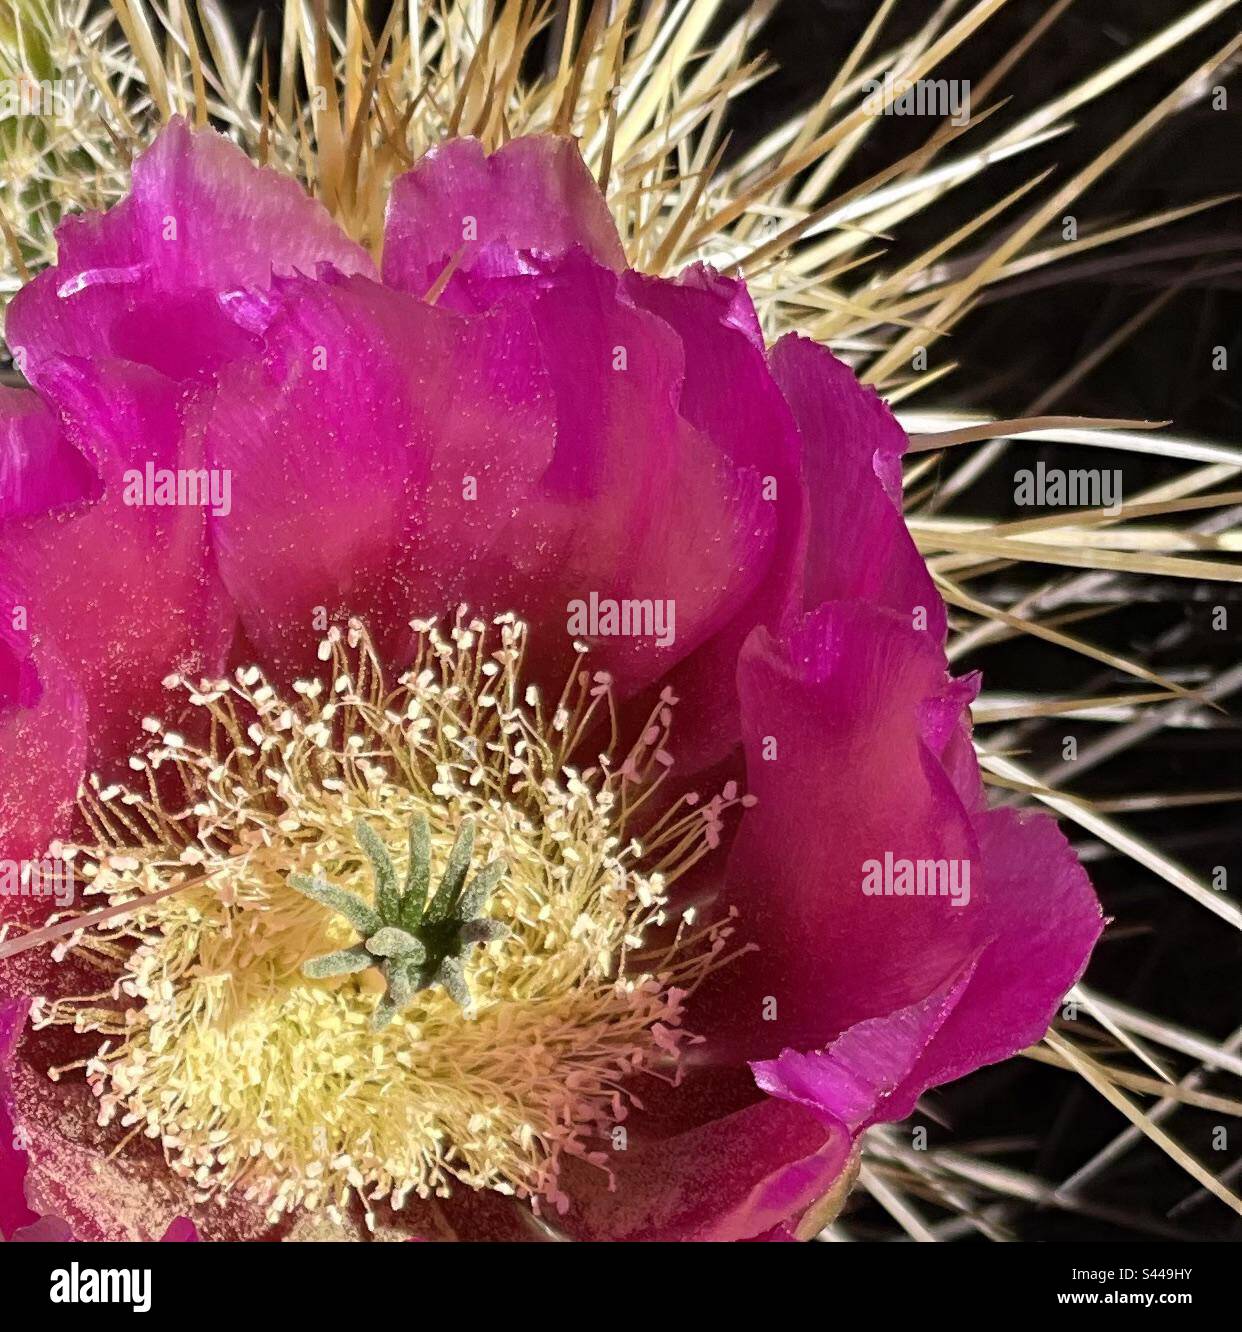 Cactus hérisson en fleur de fuchsia, pétales recouverts de pollen, étamines et pistil, épines rayonnantes, désert de Sonoran, Phoenix Mountains Preserve, Arizona Banque D'Images